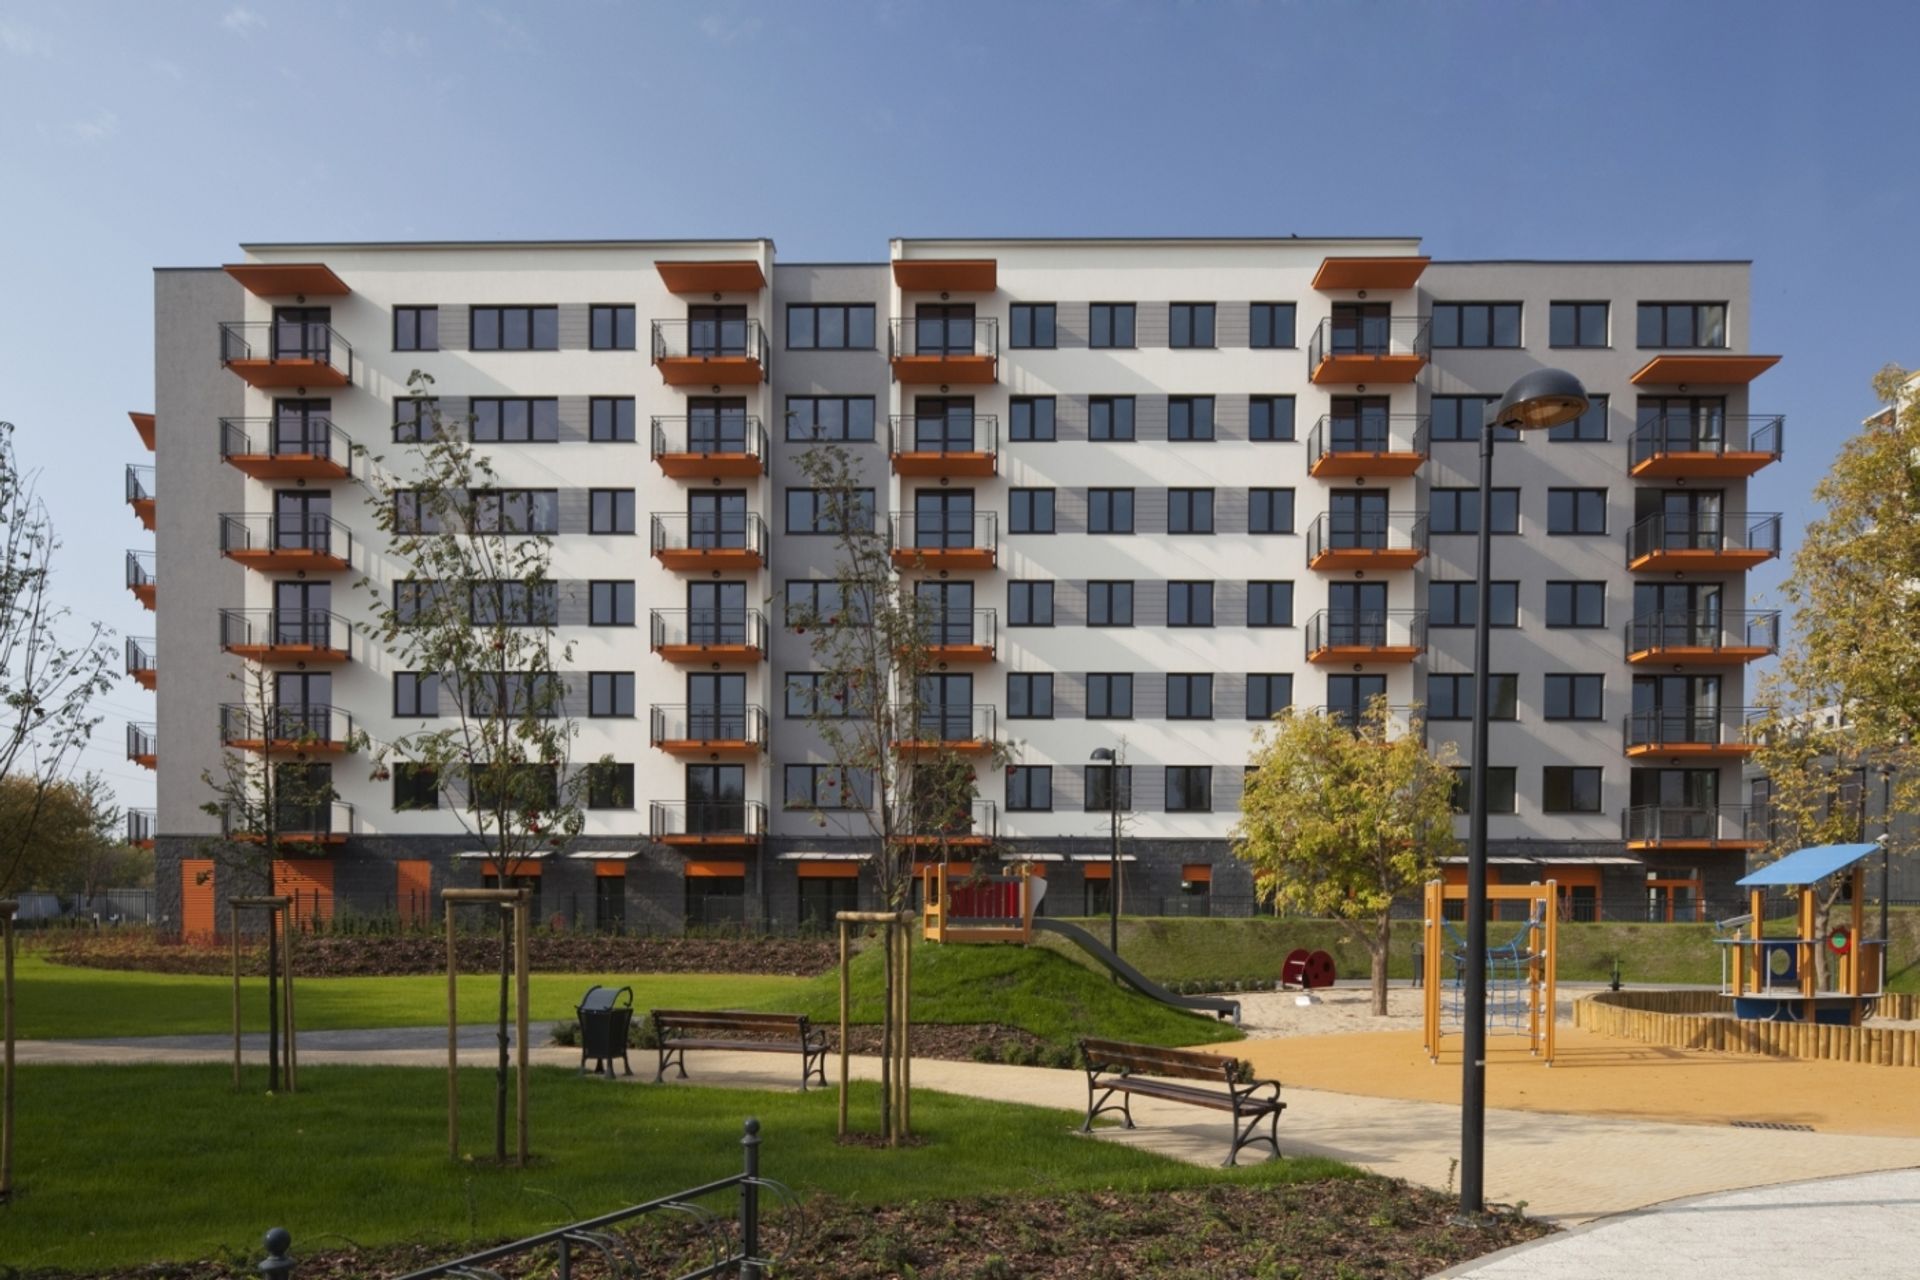  Kolejne mieszkania z oferty Bouygues Immobilier Polska gotowe do odbioru